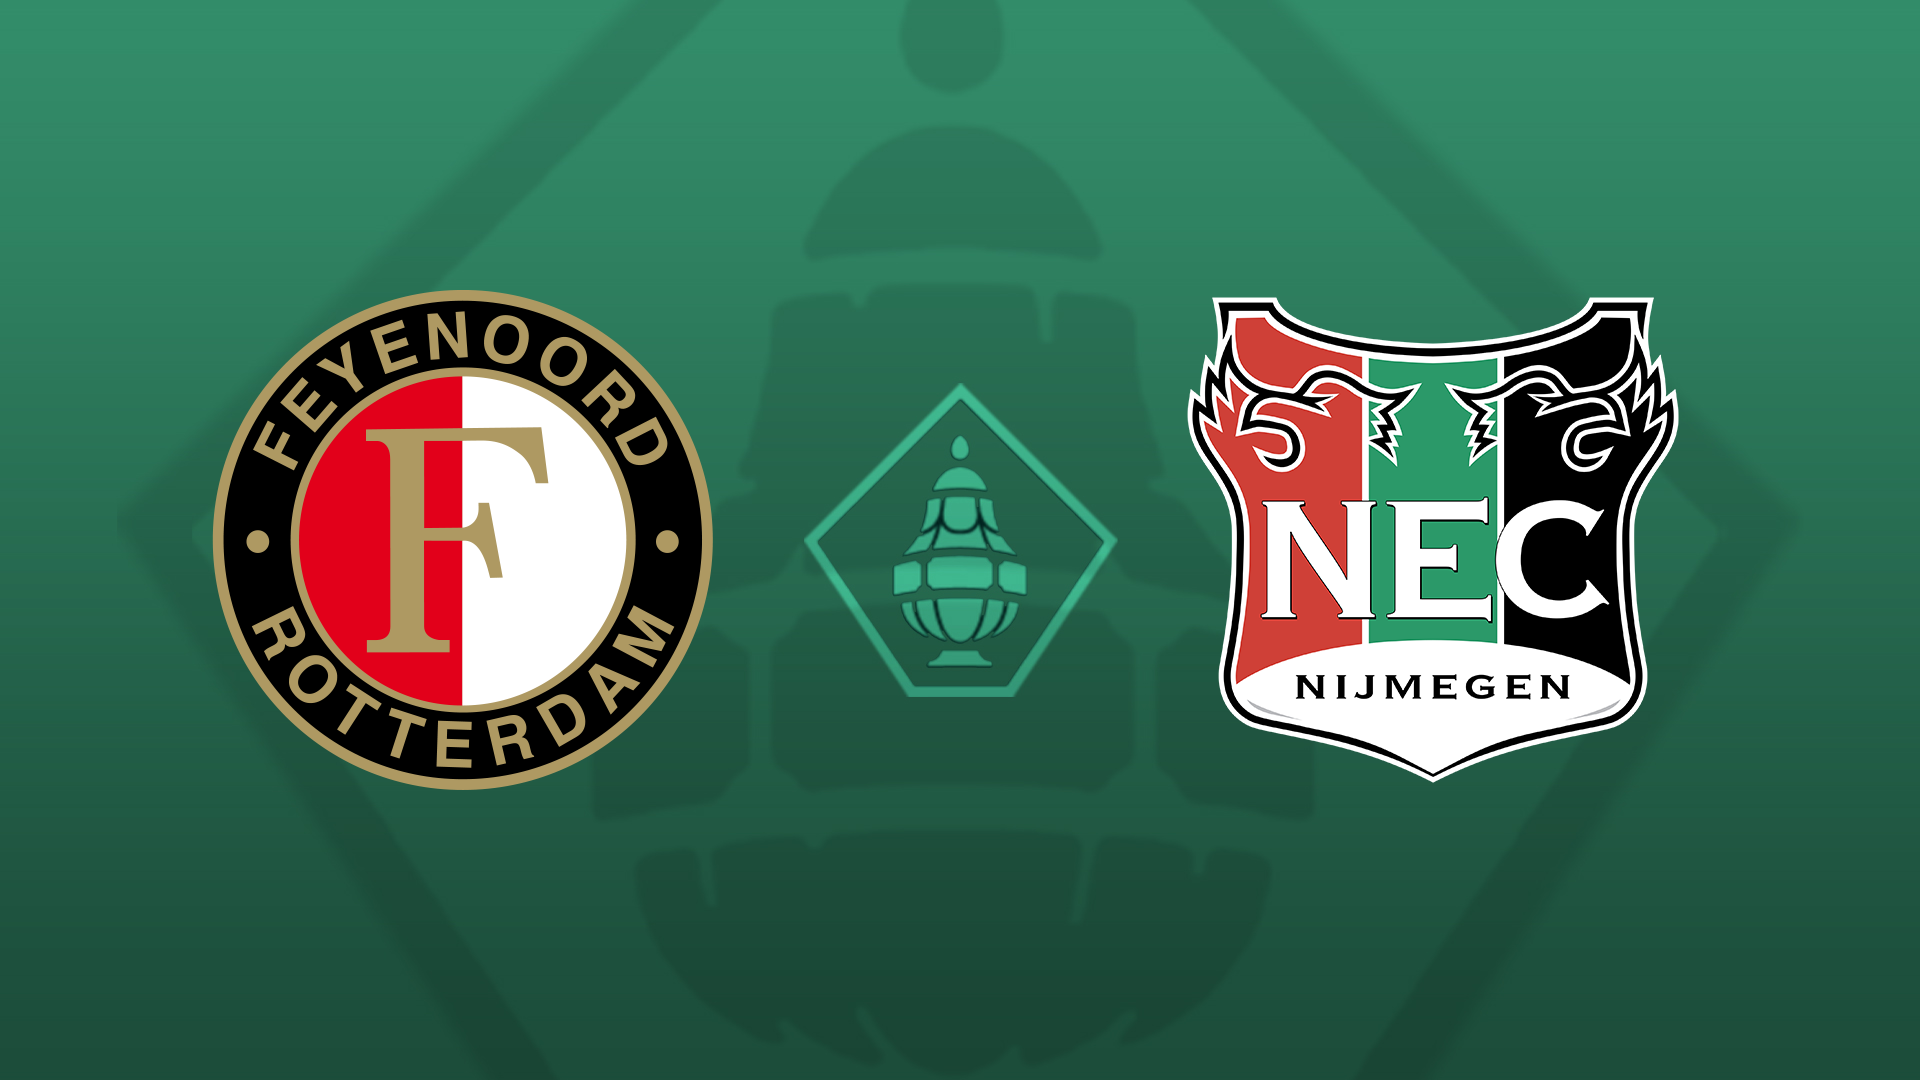 Feyenoord - N.E.C. • 4 - 4 [FT: Feyenoord door na penalties]